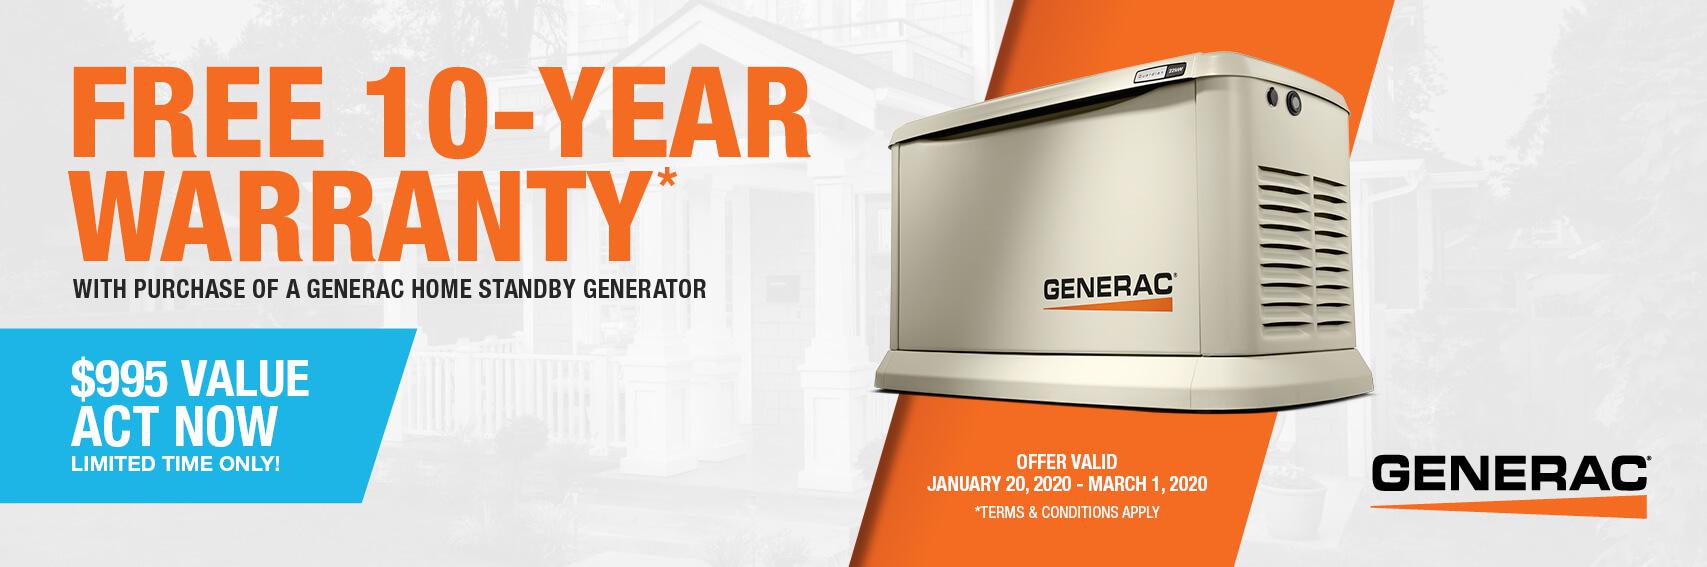 Homestandby Generator Deal | Warranty Offer | Generac Dealer | COLDWATER, MI